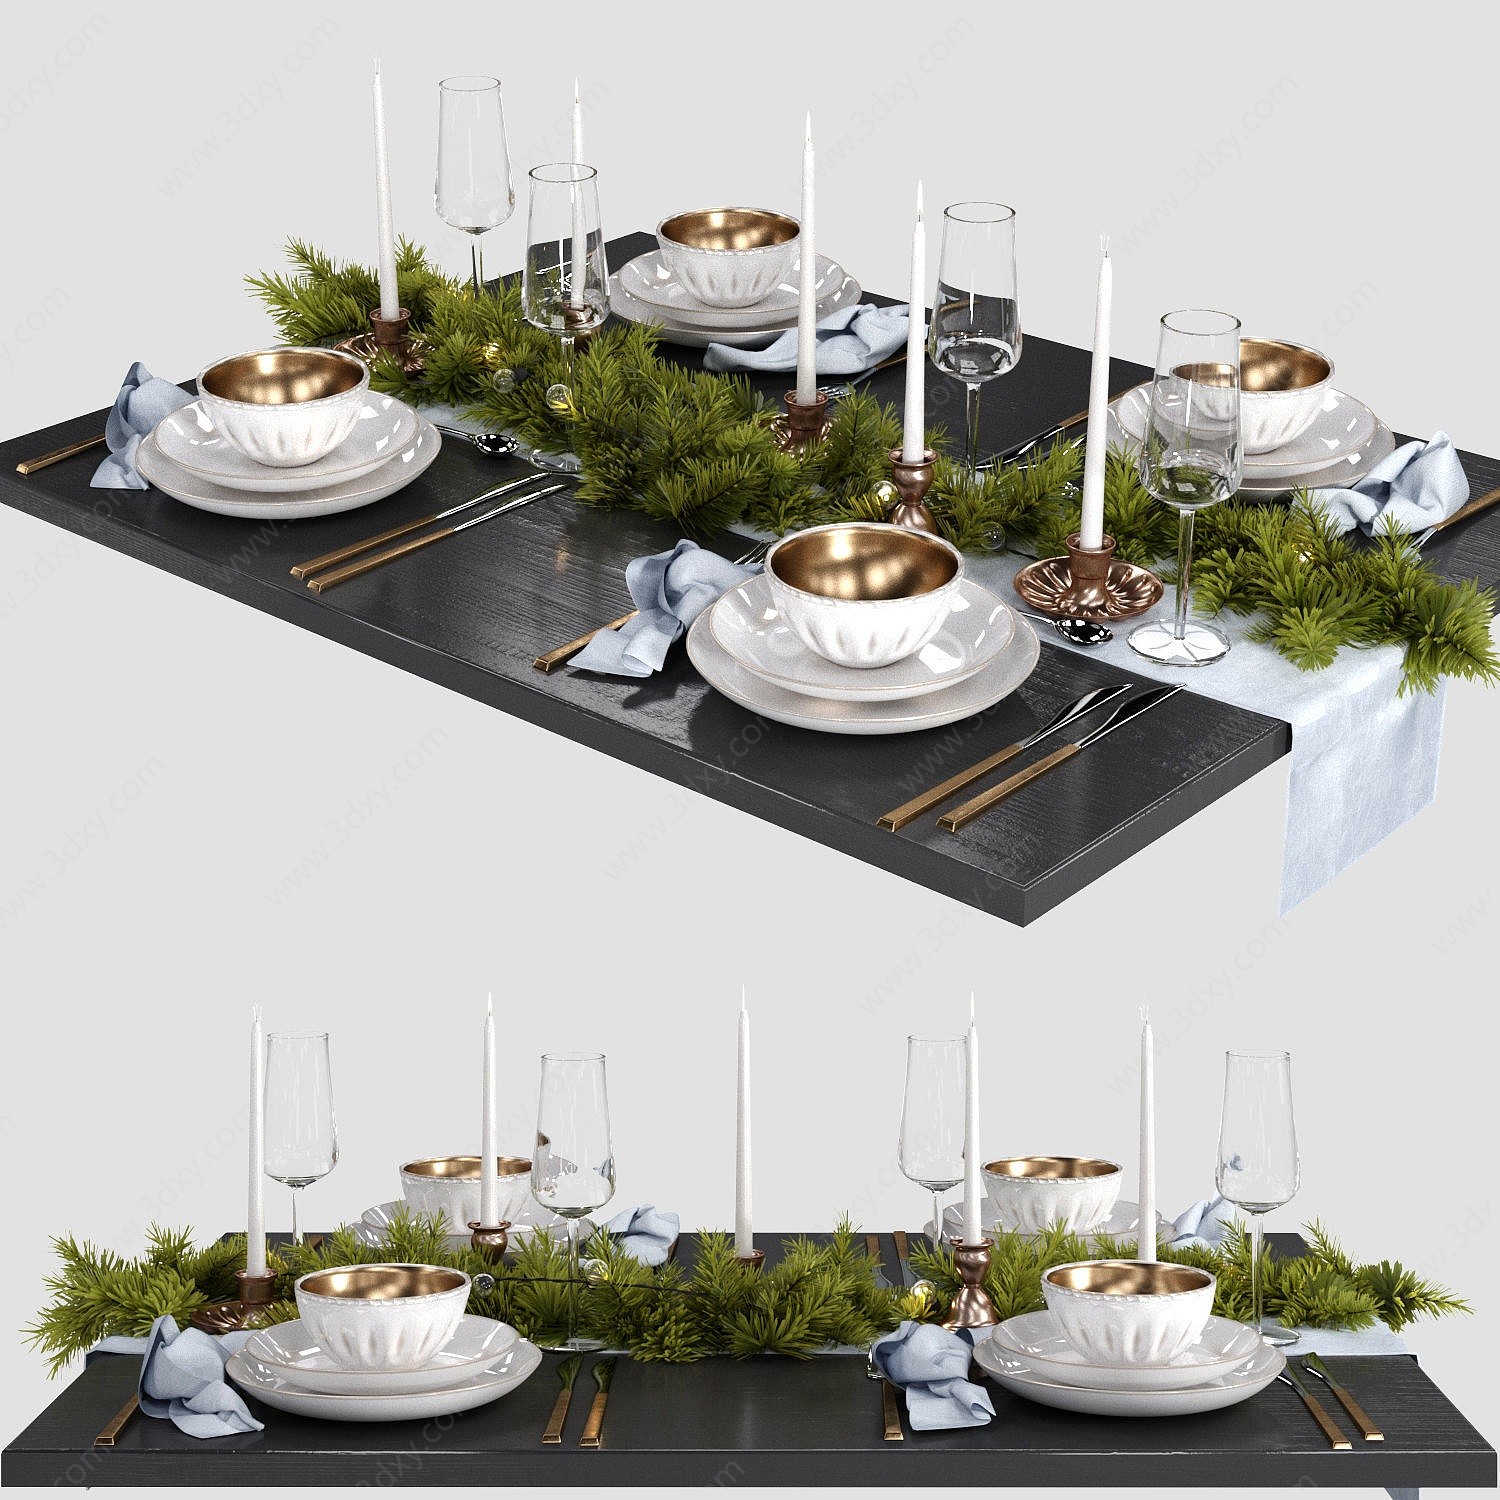 现代轻奢桌面餐具摆设3D模型